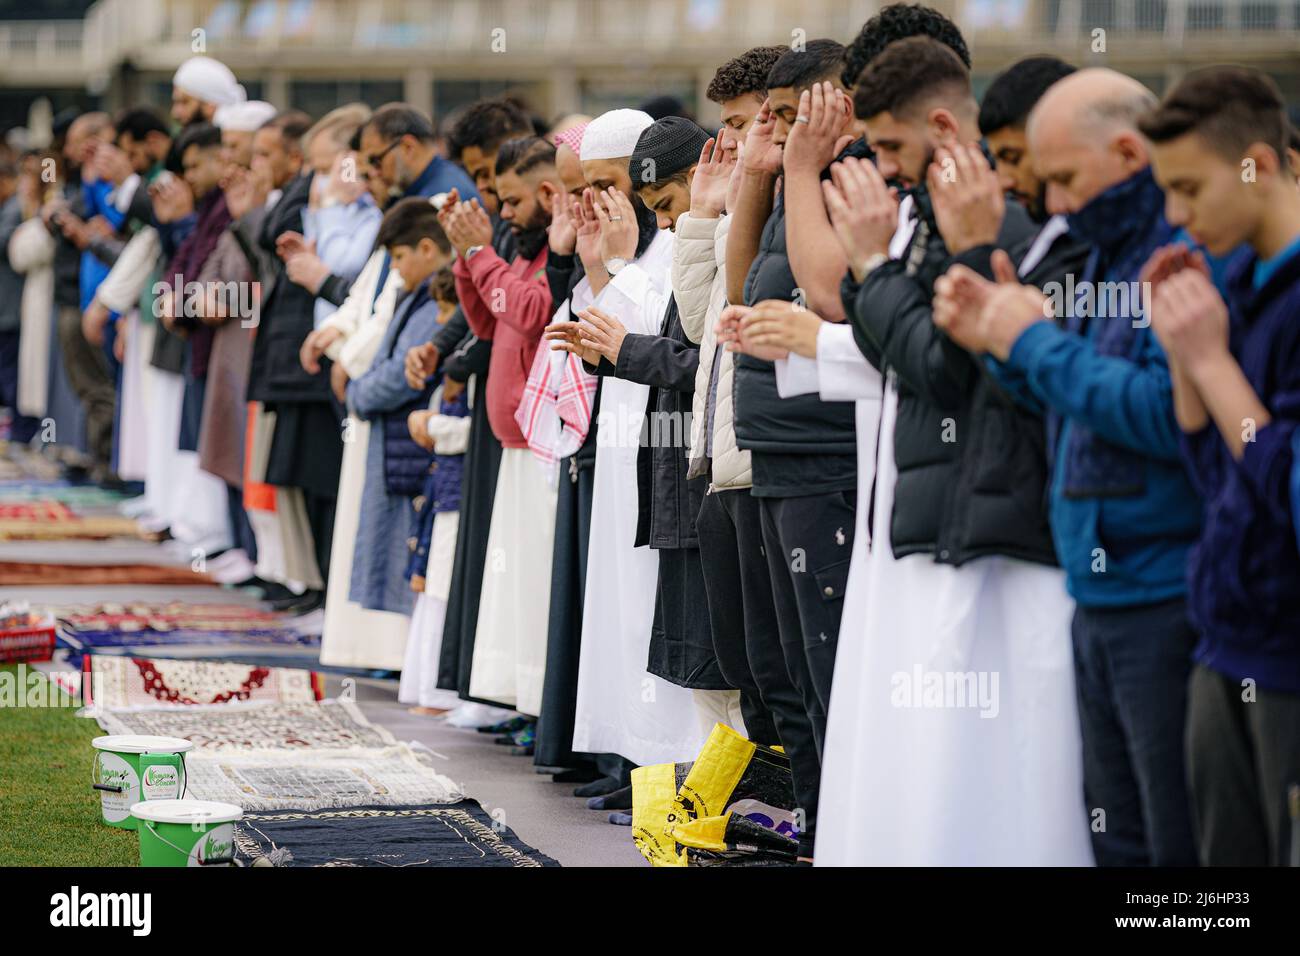 Während der Sunna nehmen Menschen am Eid-Gebet Teil, während sie im Freien im Big Eid Salah in Bristol beten: Eid al-Fitr 2022, als der heilige Monat Ramadan zu Ende geht und Muslime Eid al-Fitr feiern. Bilddatum: Montag, 2. Mai 2022. Stockfoto